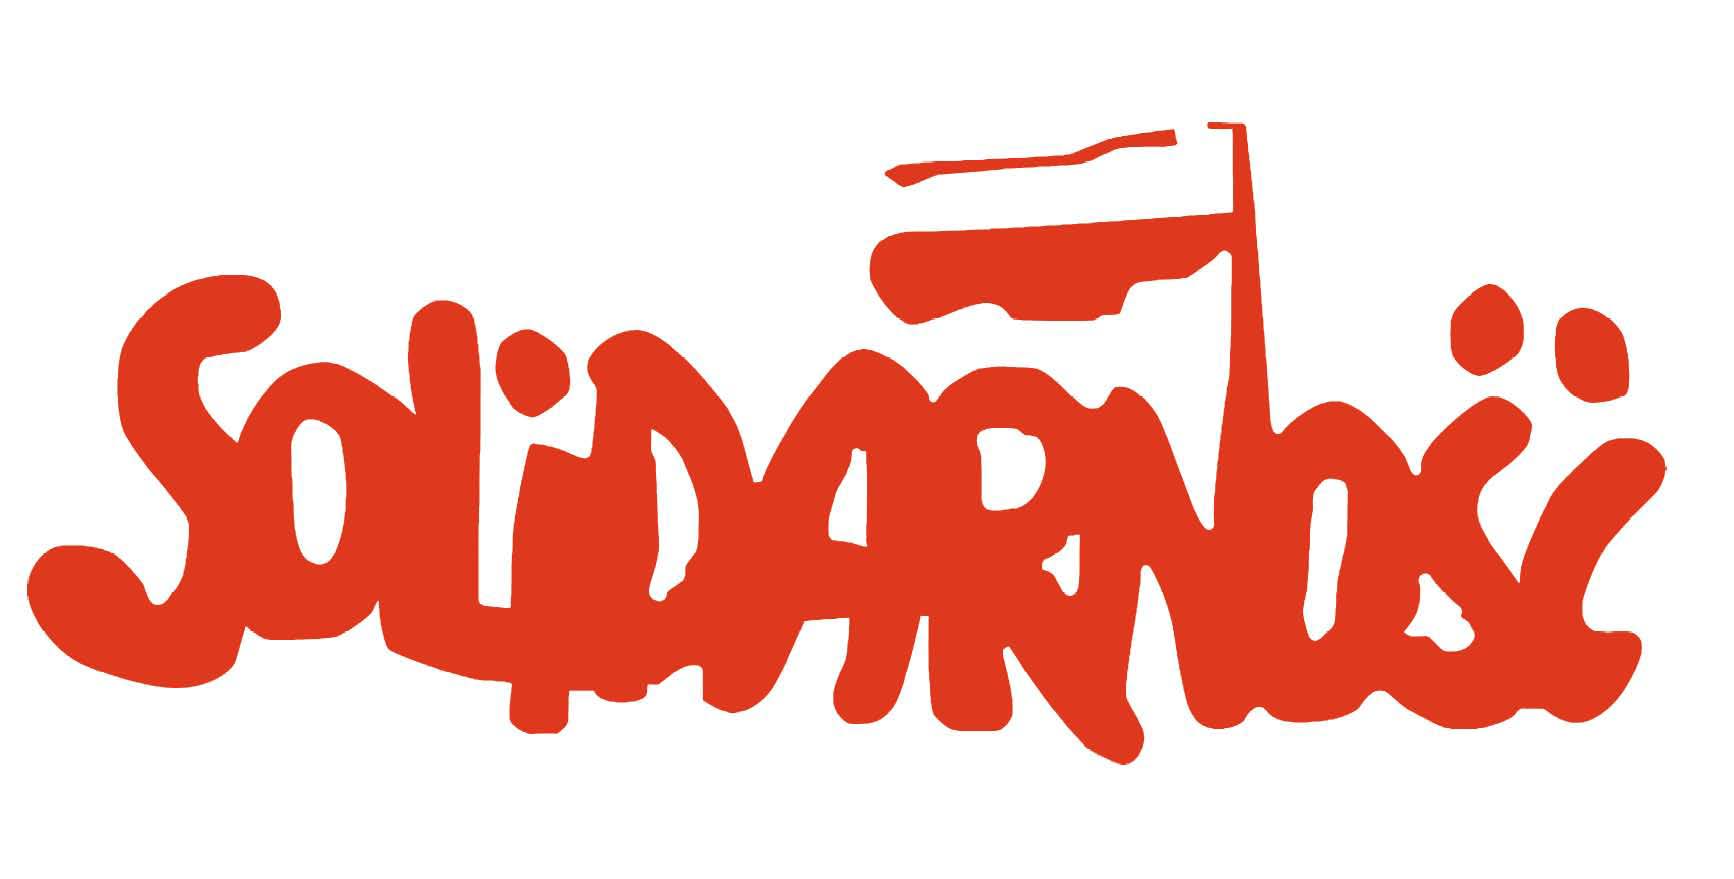 Logo Solidarność